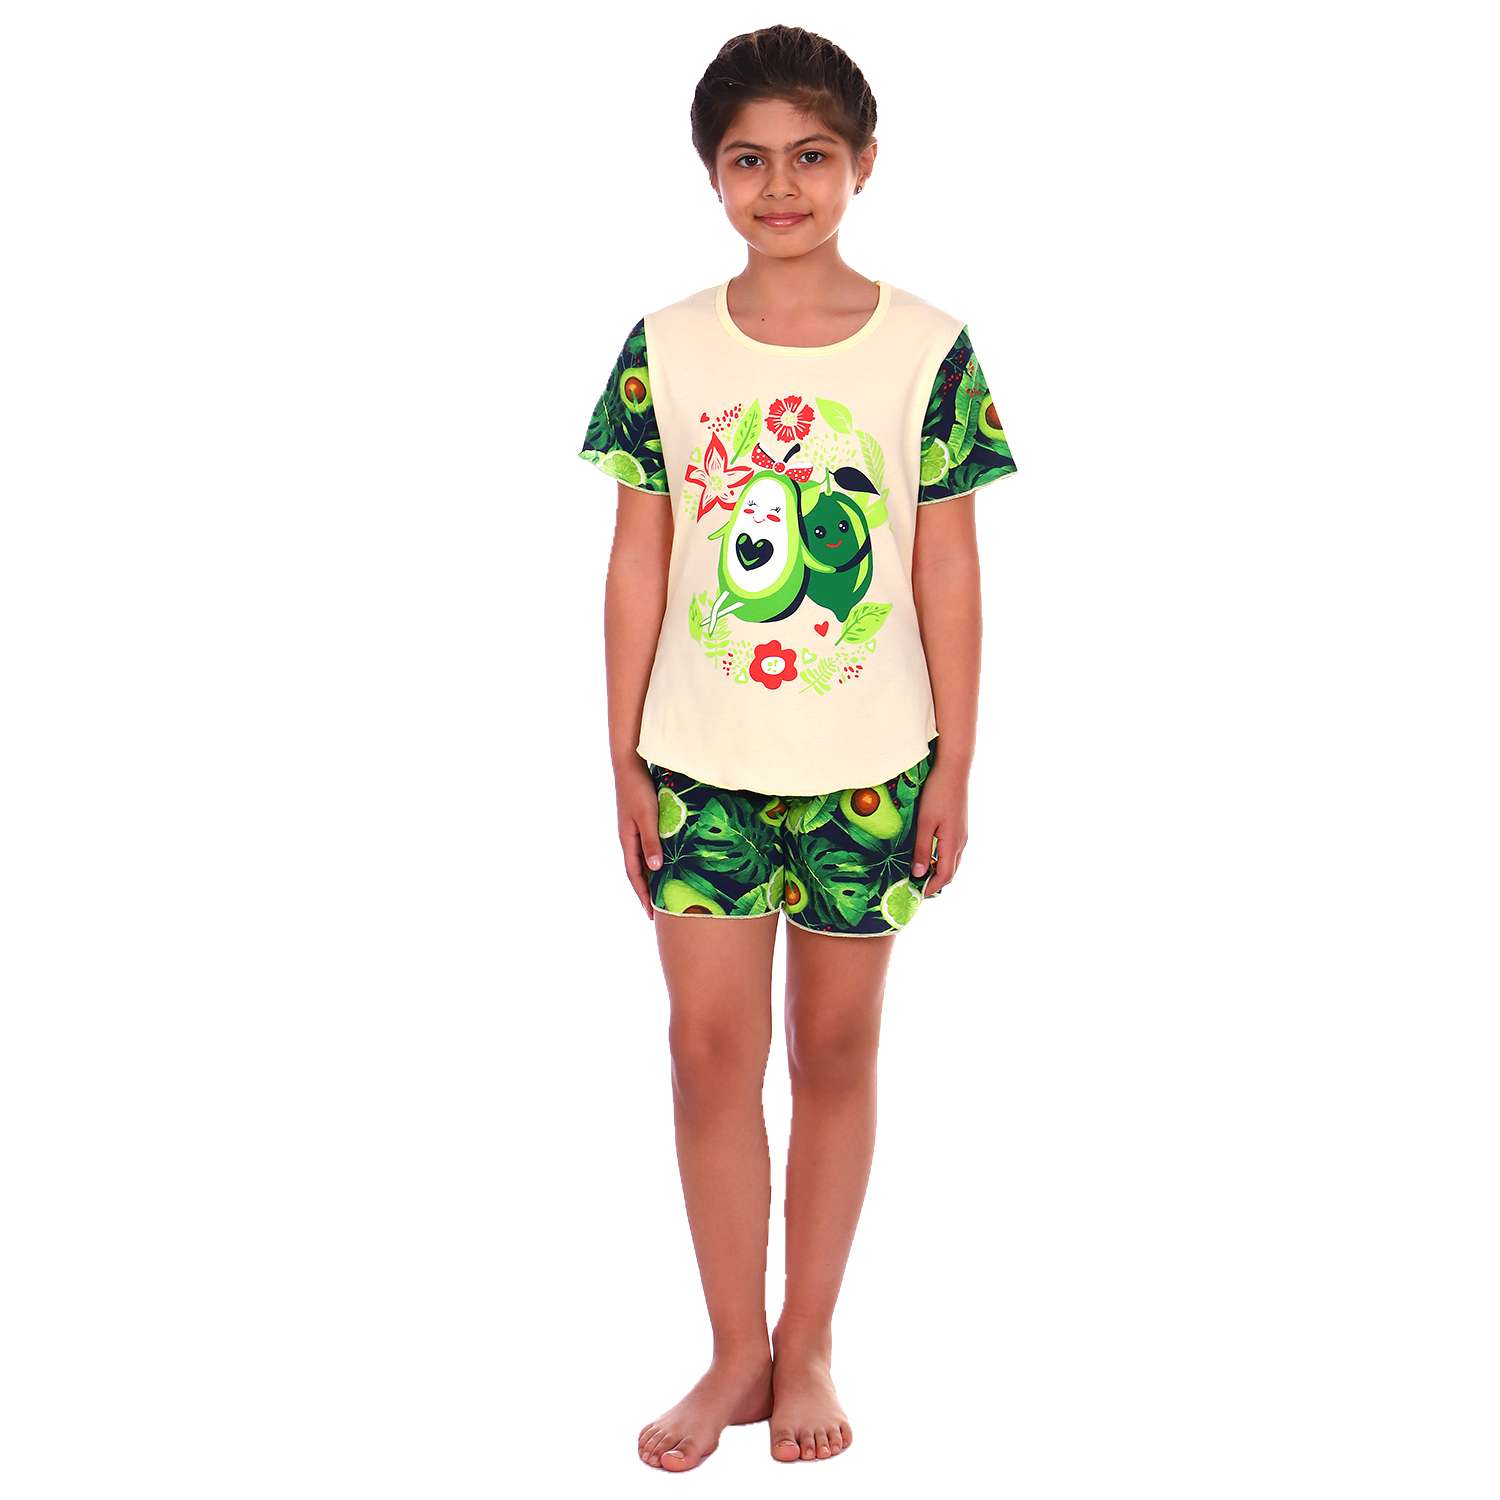 Пижама Детская Одежда 004К8Кр/темно-зеленый - фото 1